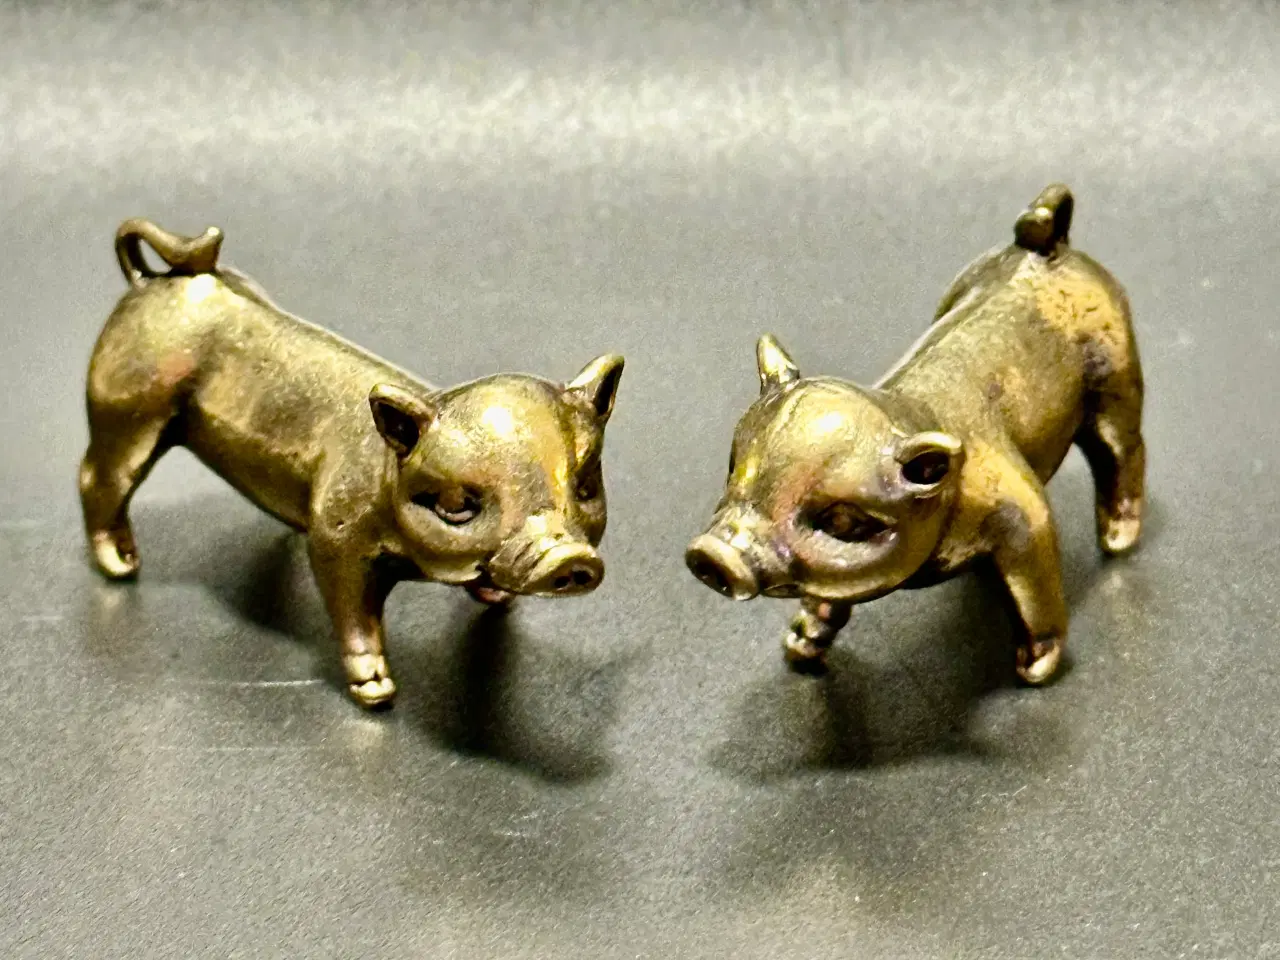 Billede 4 - To miniature grisefigurer håndstøbt af messing